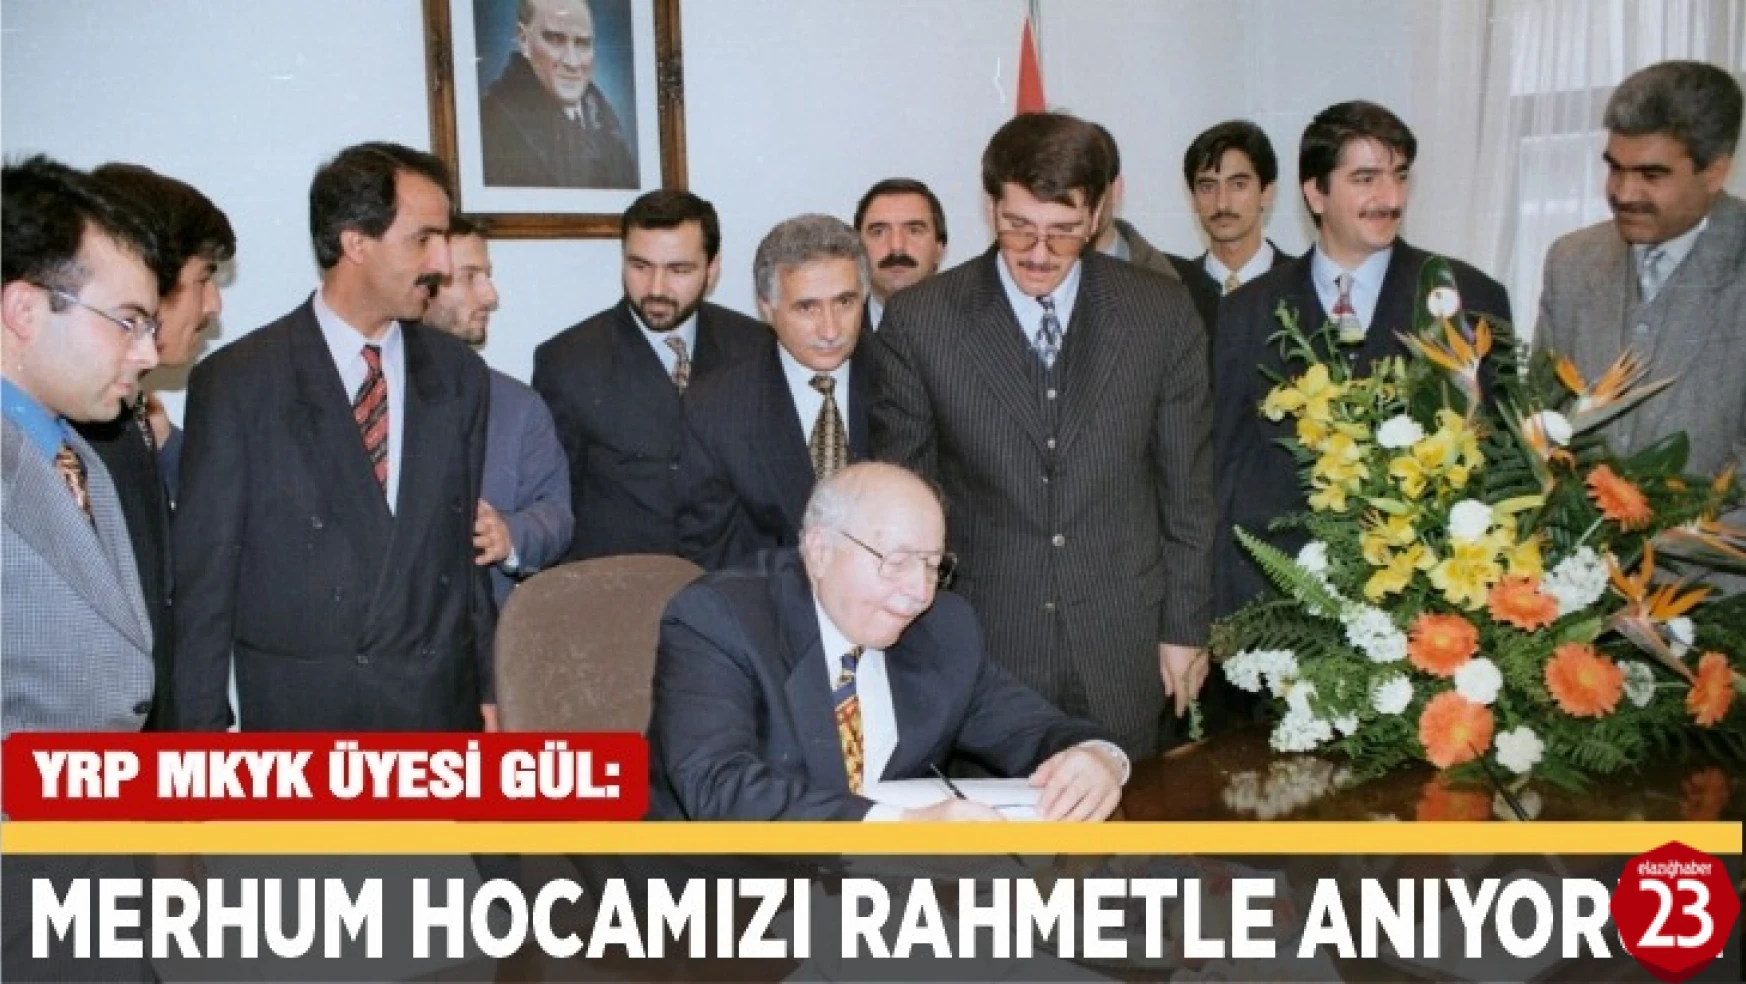 YRP MKYK Üyesi Mehmet Gül, Merhum Hocamızı Rahmetle Anıyoruz